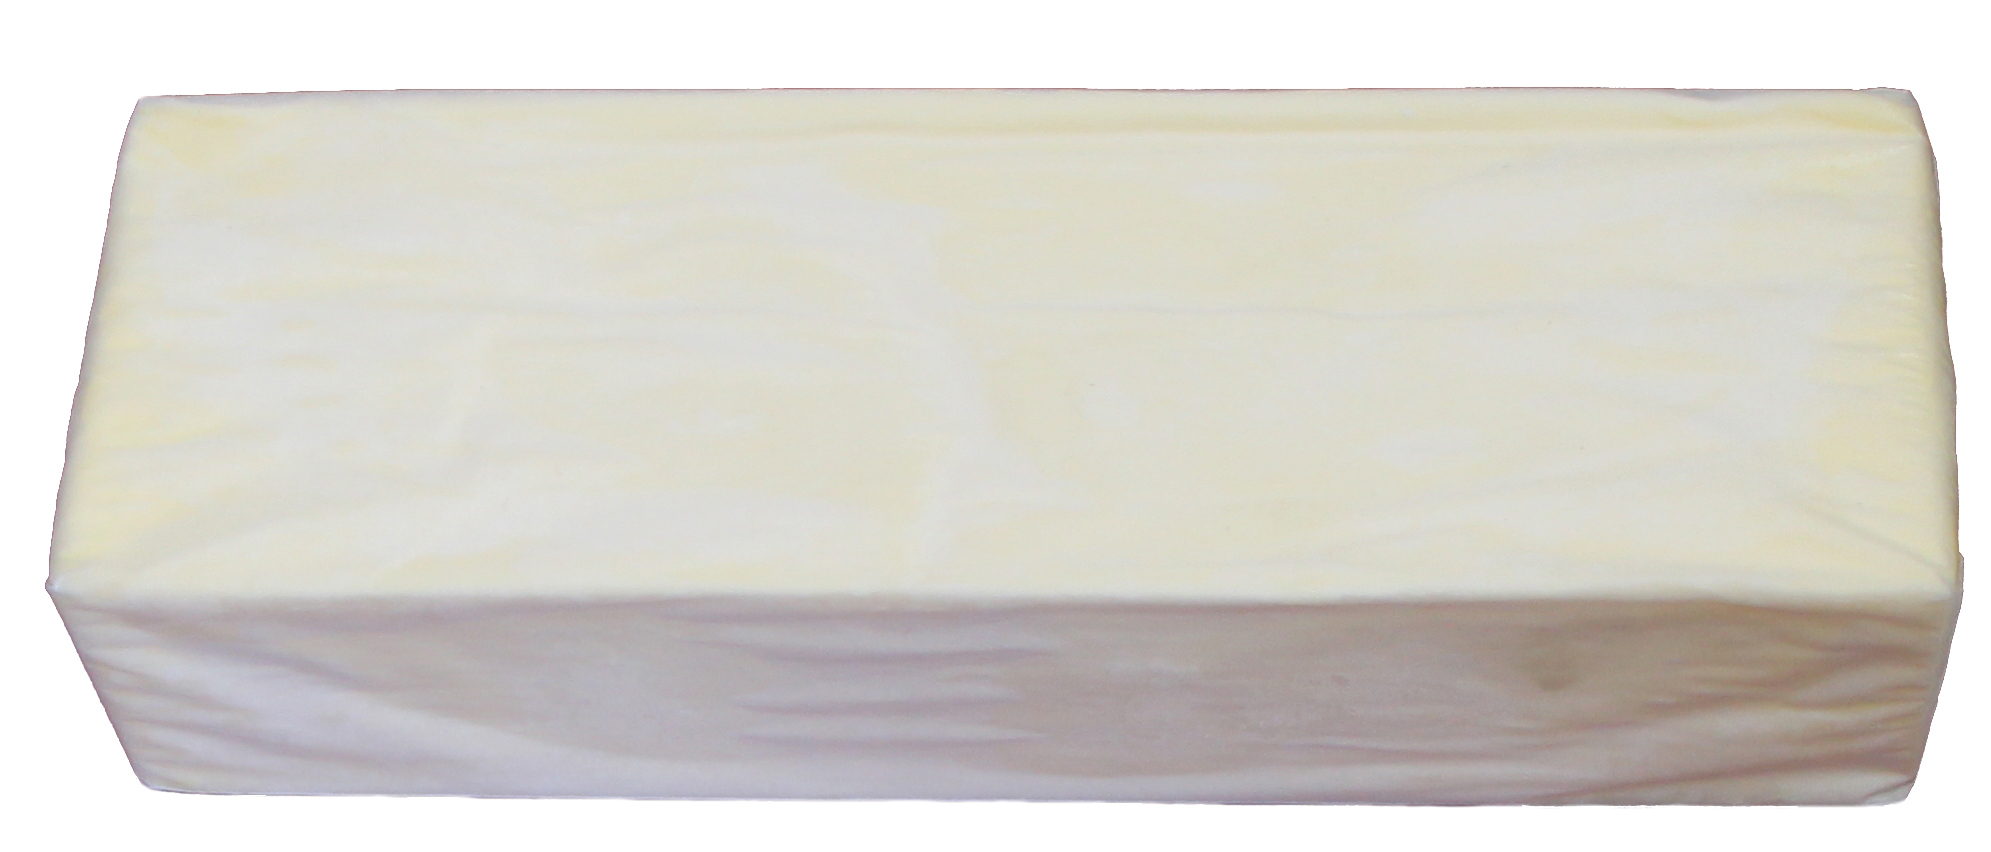 Масло сливочное 500 гр. Масло Крестьянское сладкосливочное 500 гр. Масло сливочное 82.5 весовое 20 кг. Масло Юкмп 180 г. Масло сливочное в пергаменте.